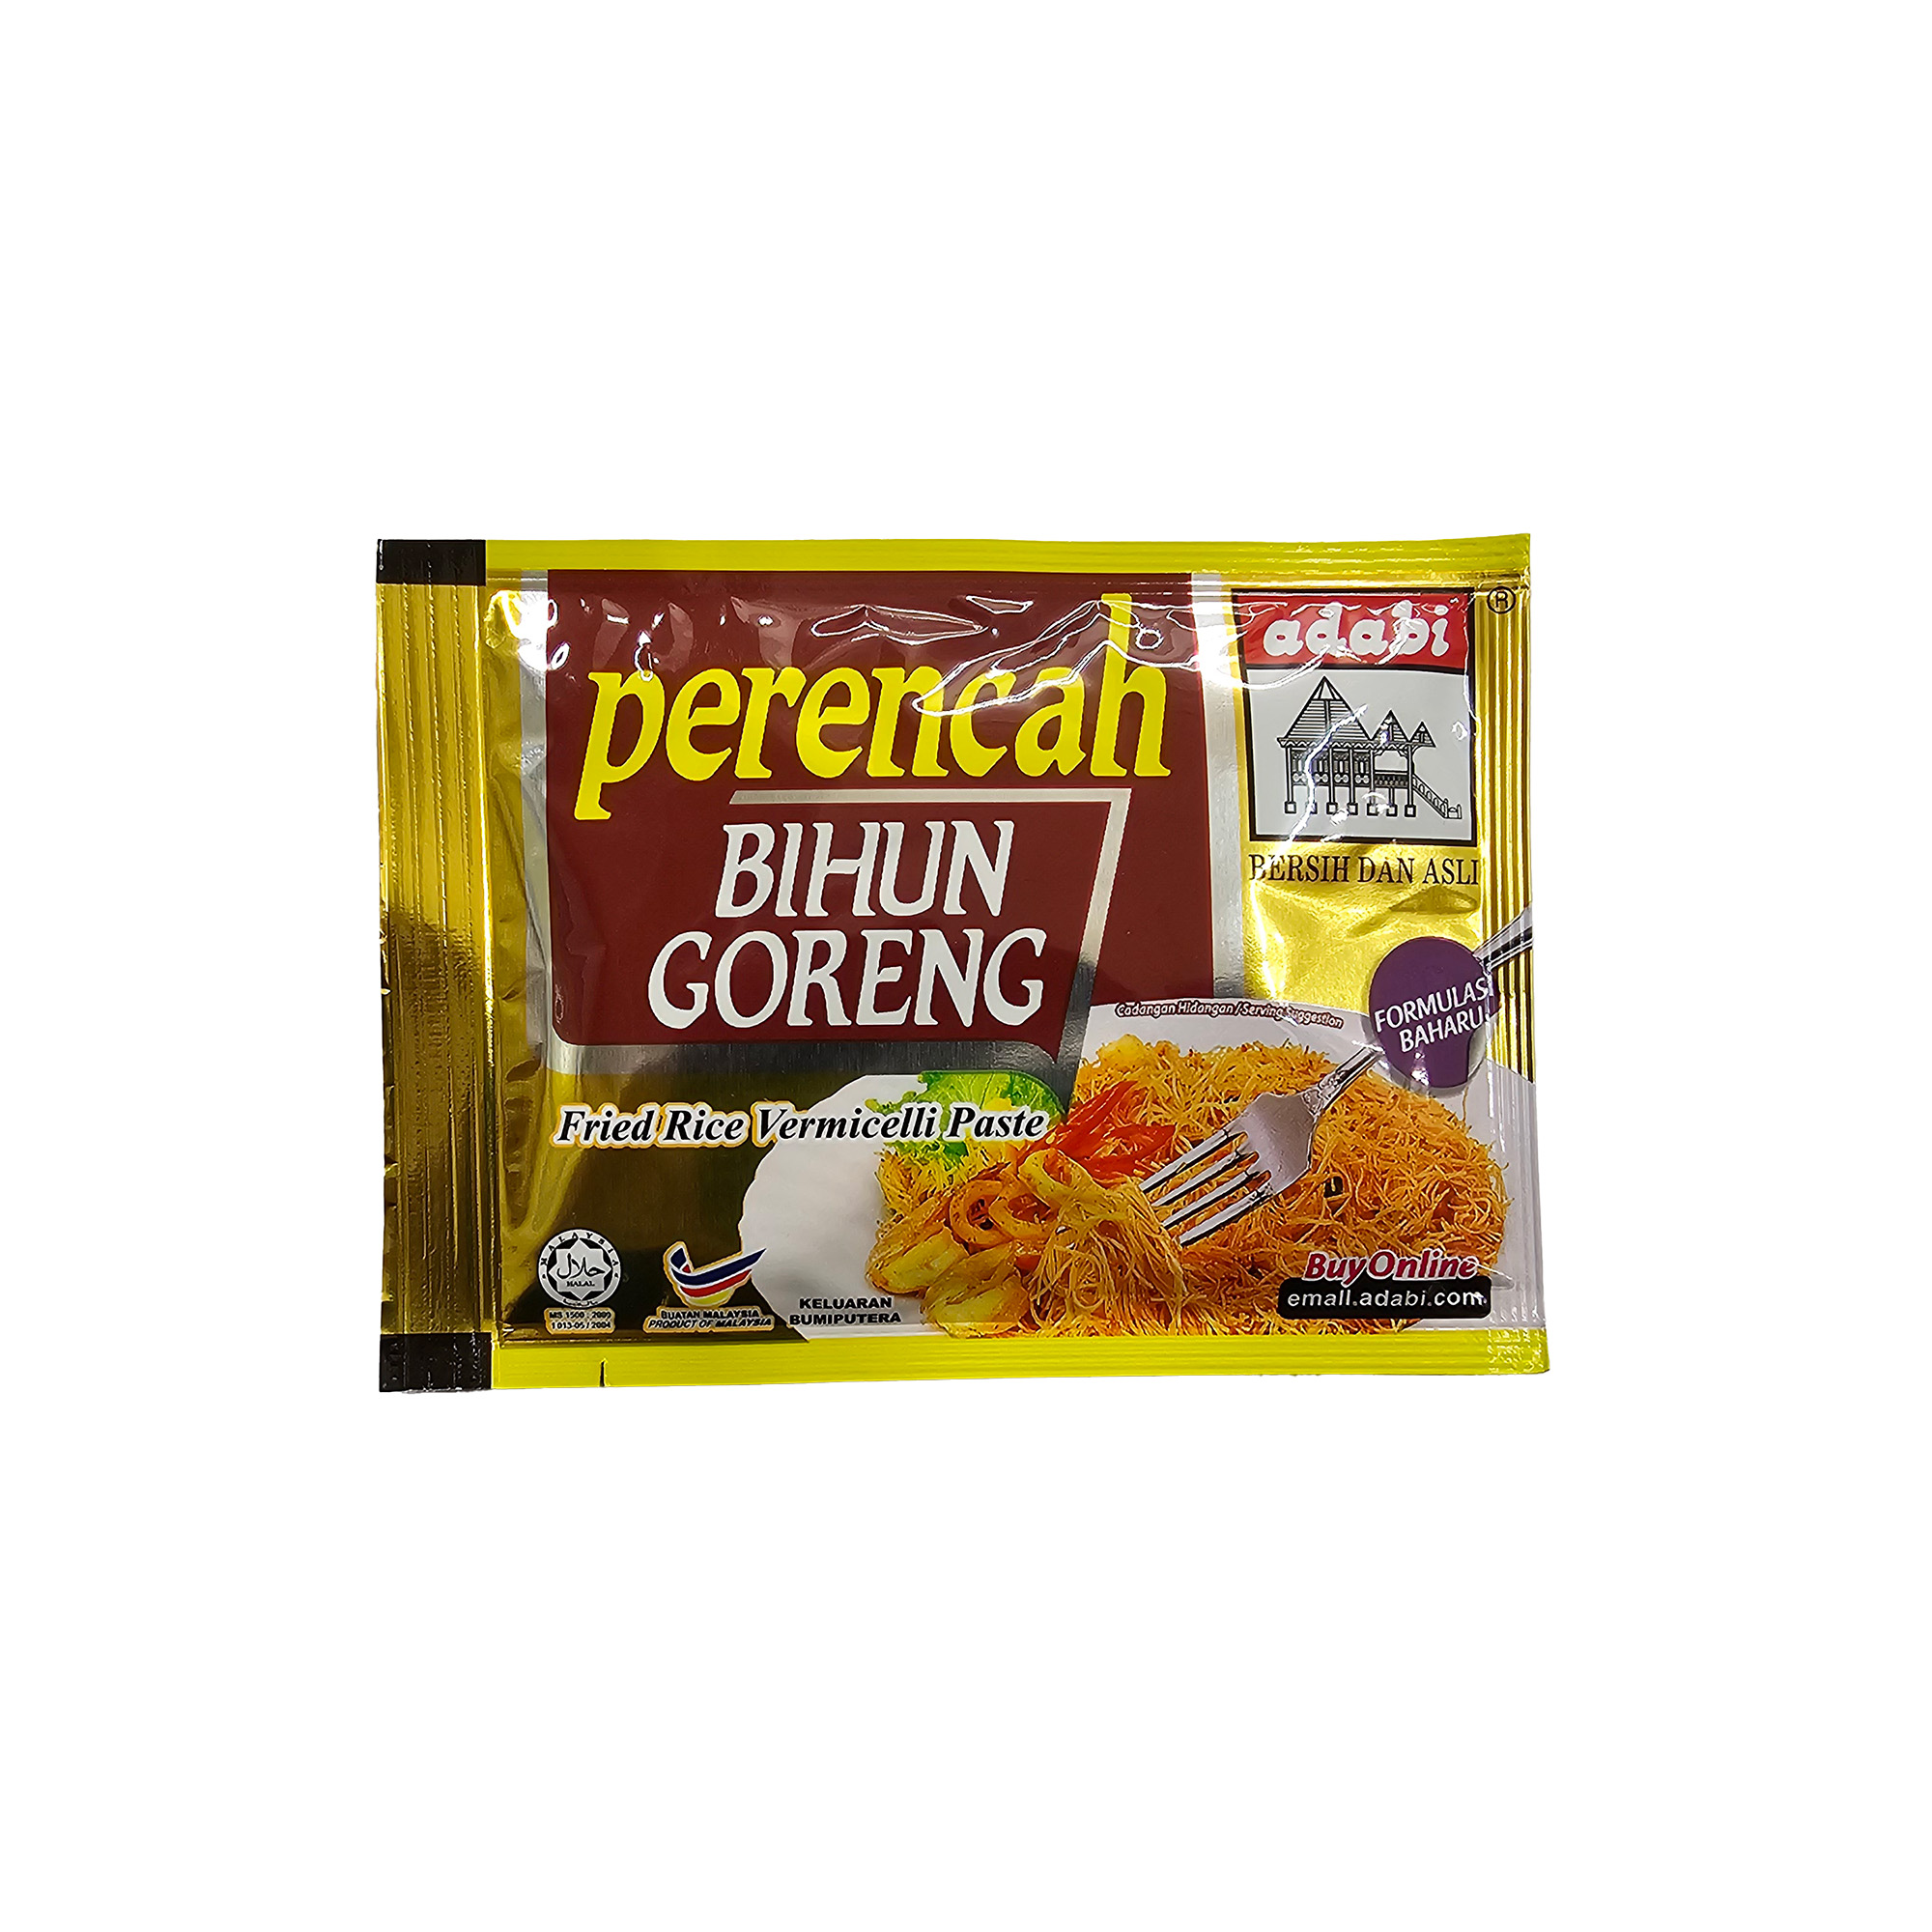 Perencah Bihun Goreng / Fried Rice Vermicelli Paste (adabi)